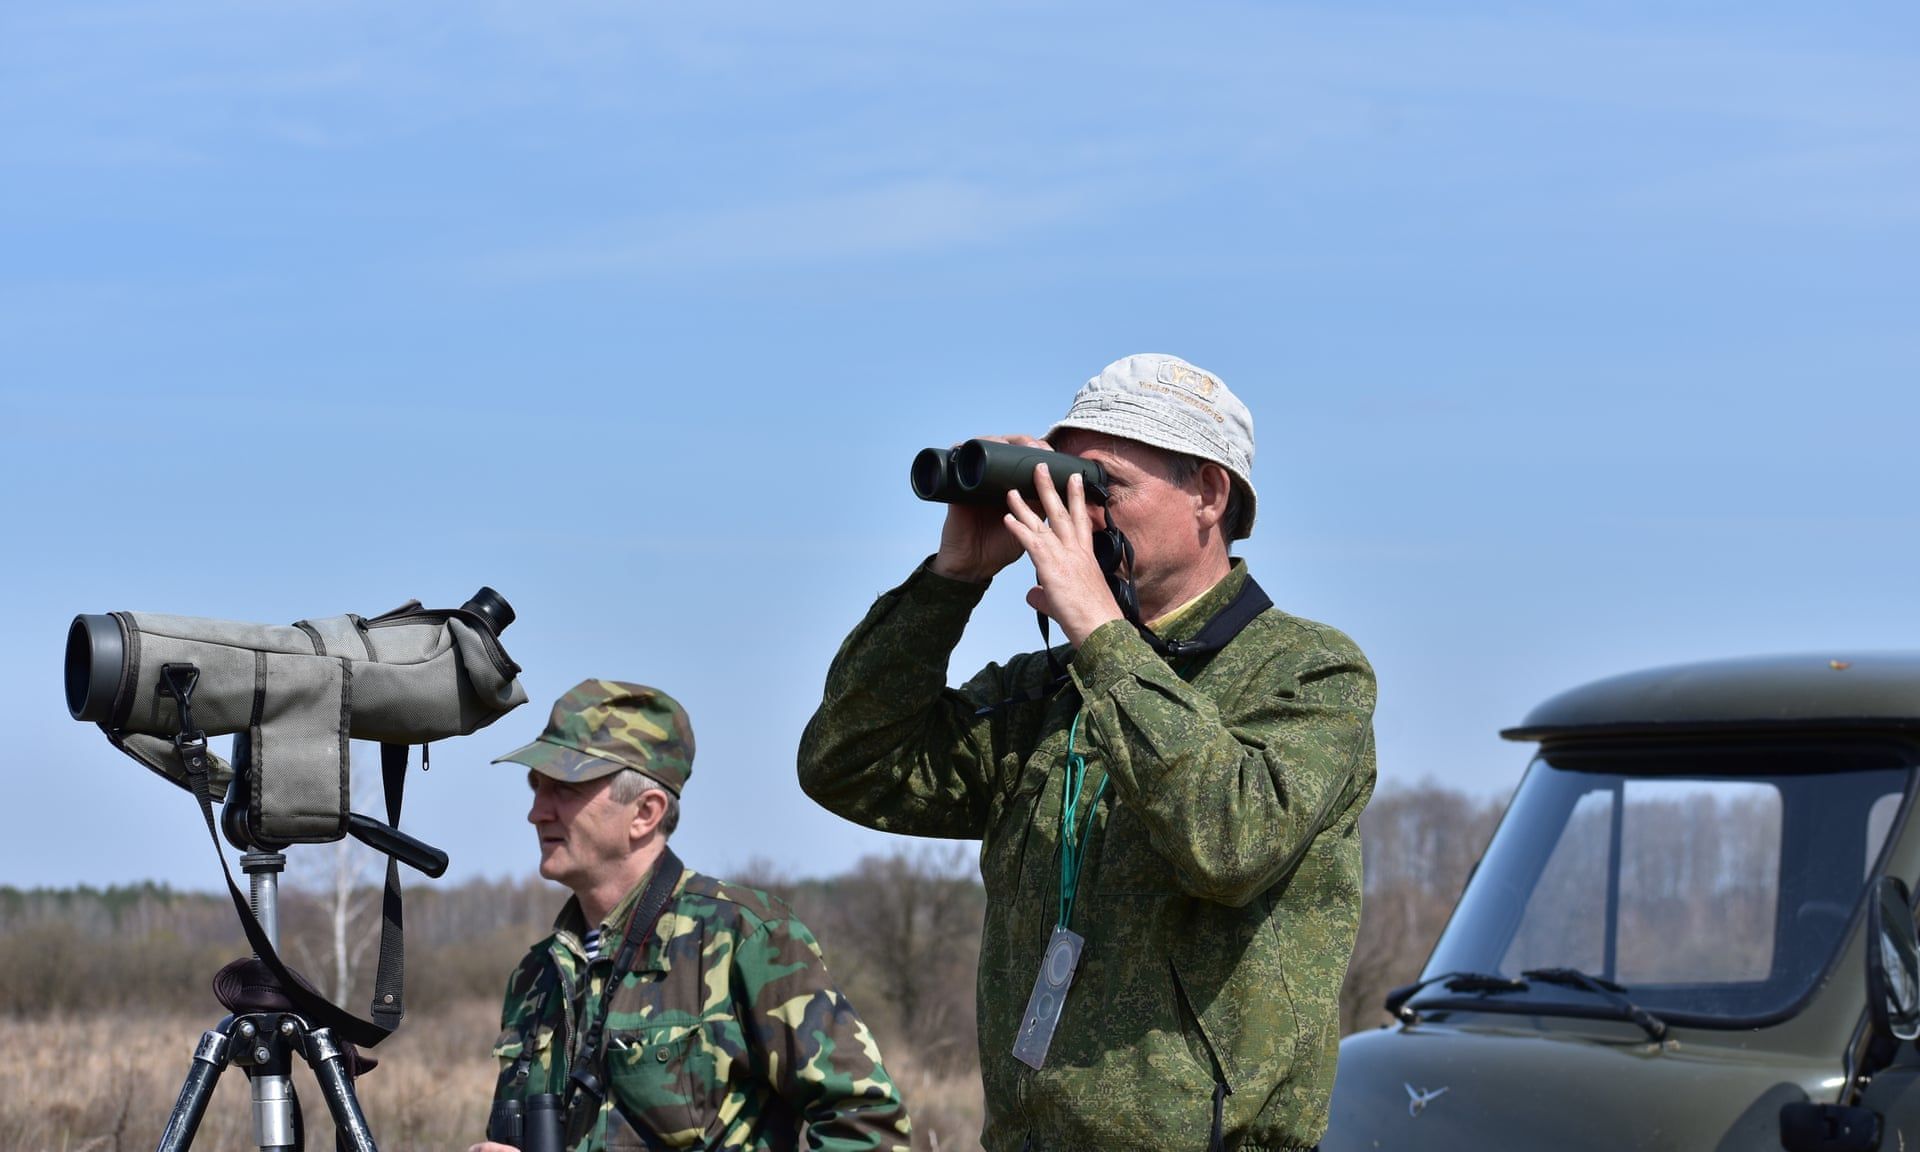 Birdwatchers Valery Yurko & Valery Dombrovskiy on the Palieski reserve